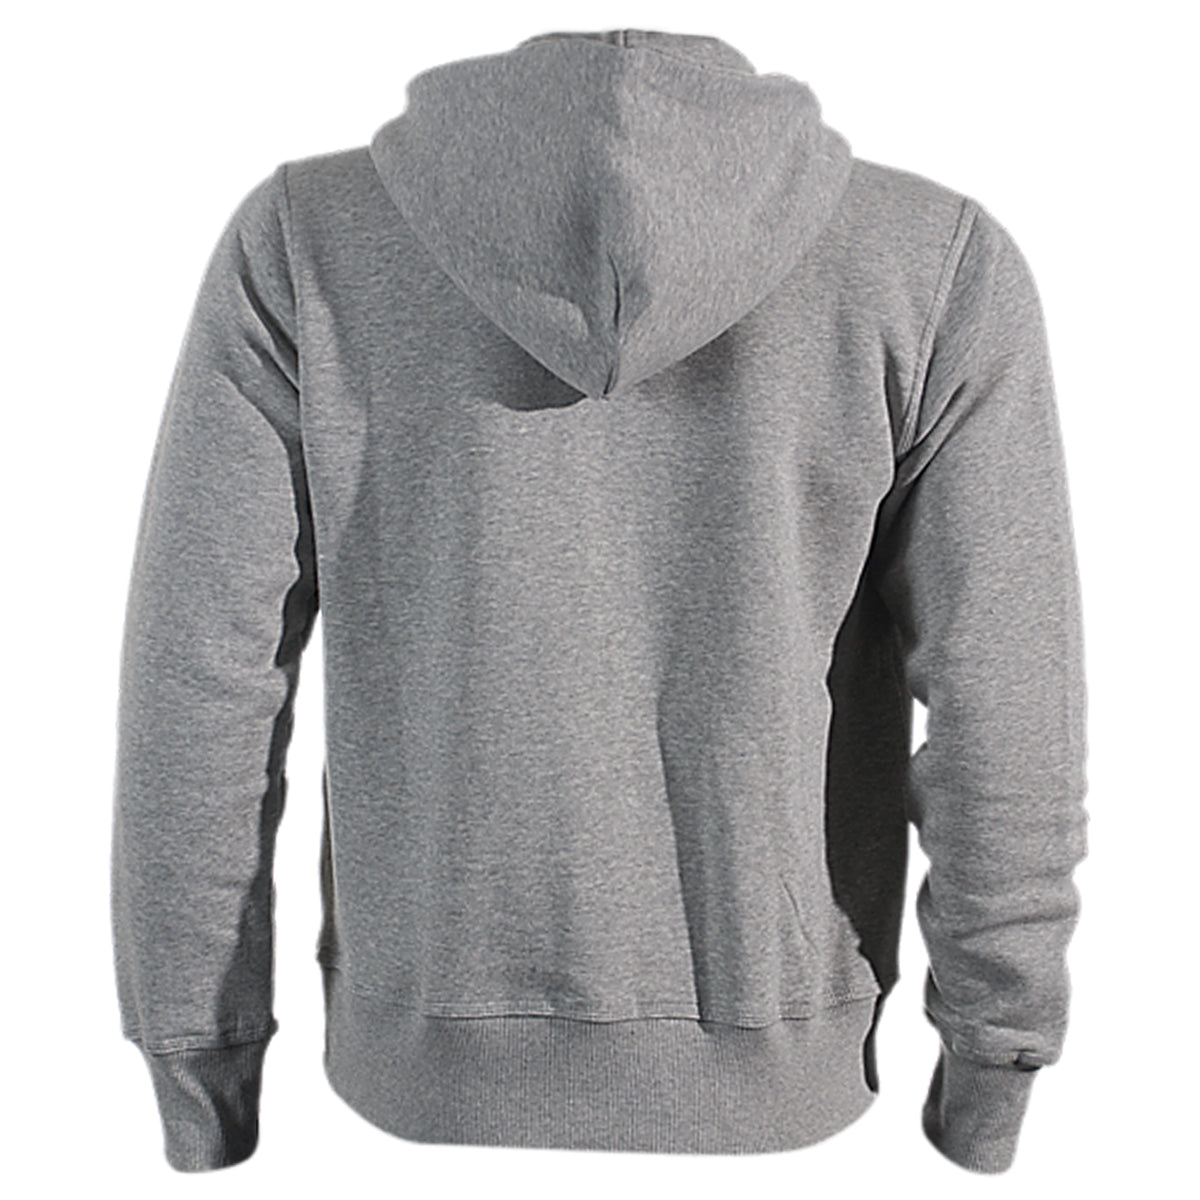 Nike Brushed Fleece Zip Hoodie Mens Style : 502638